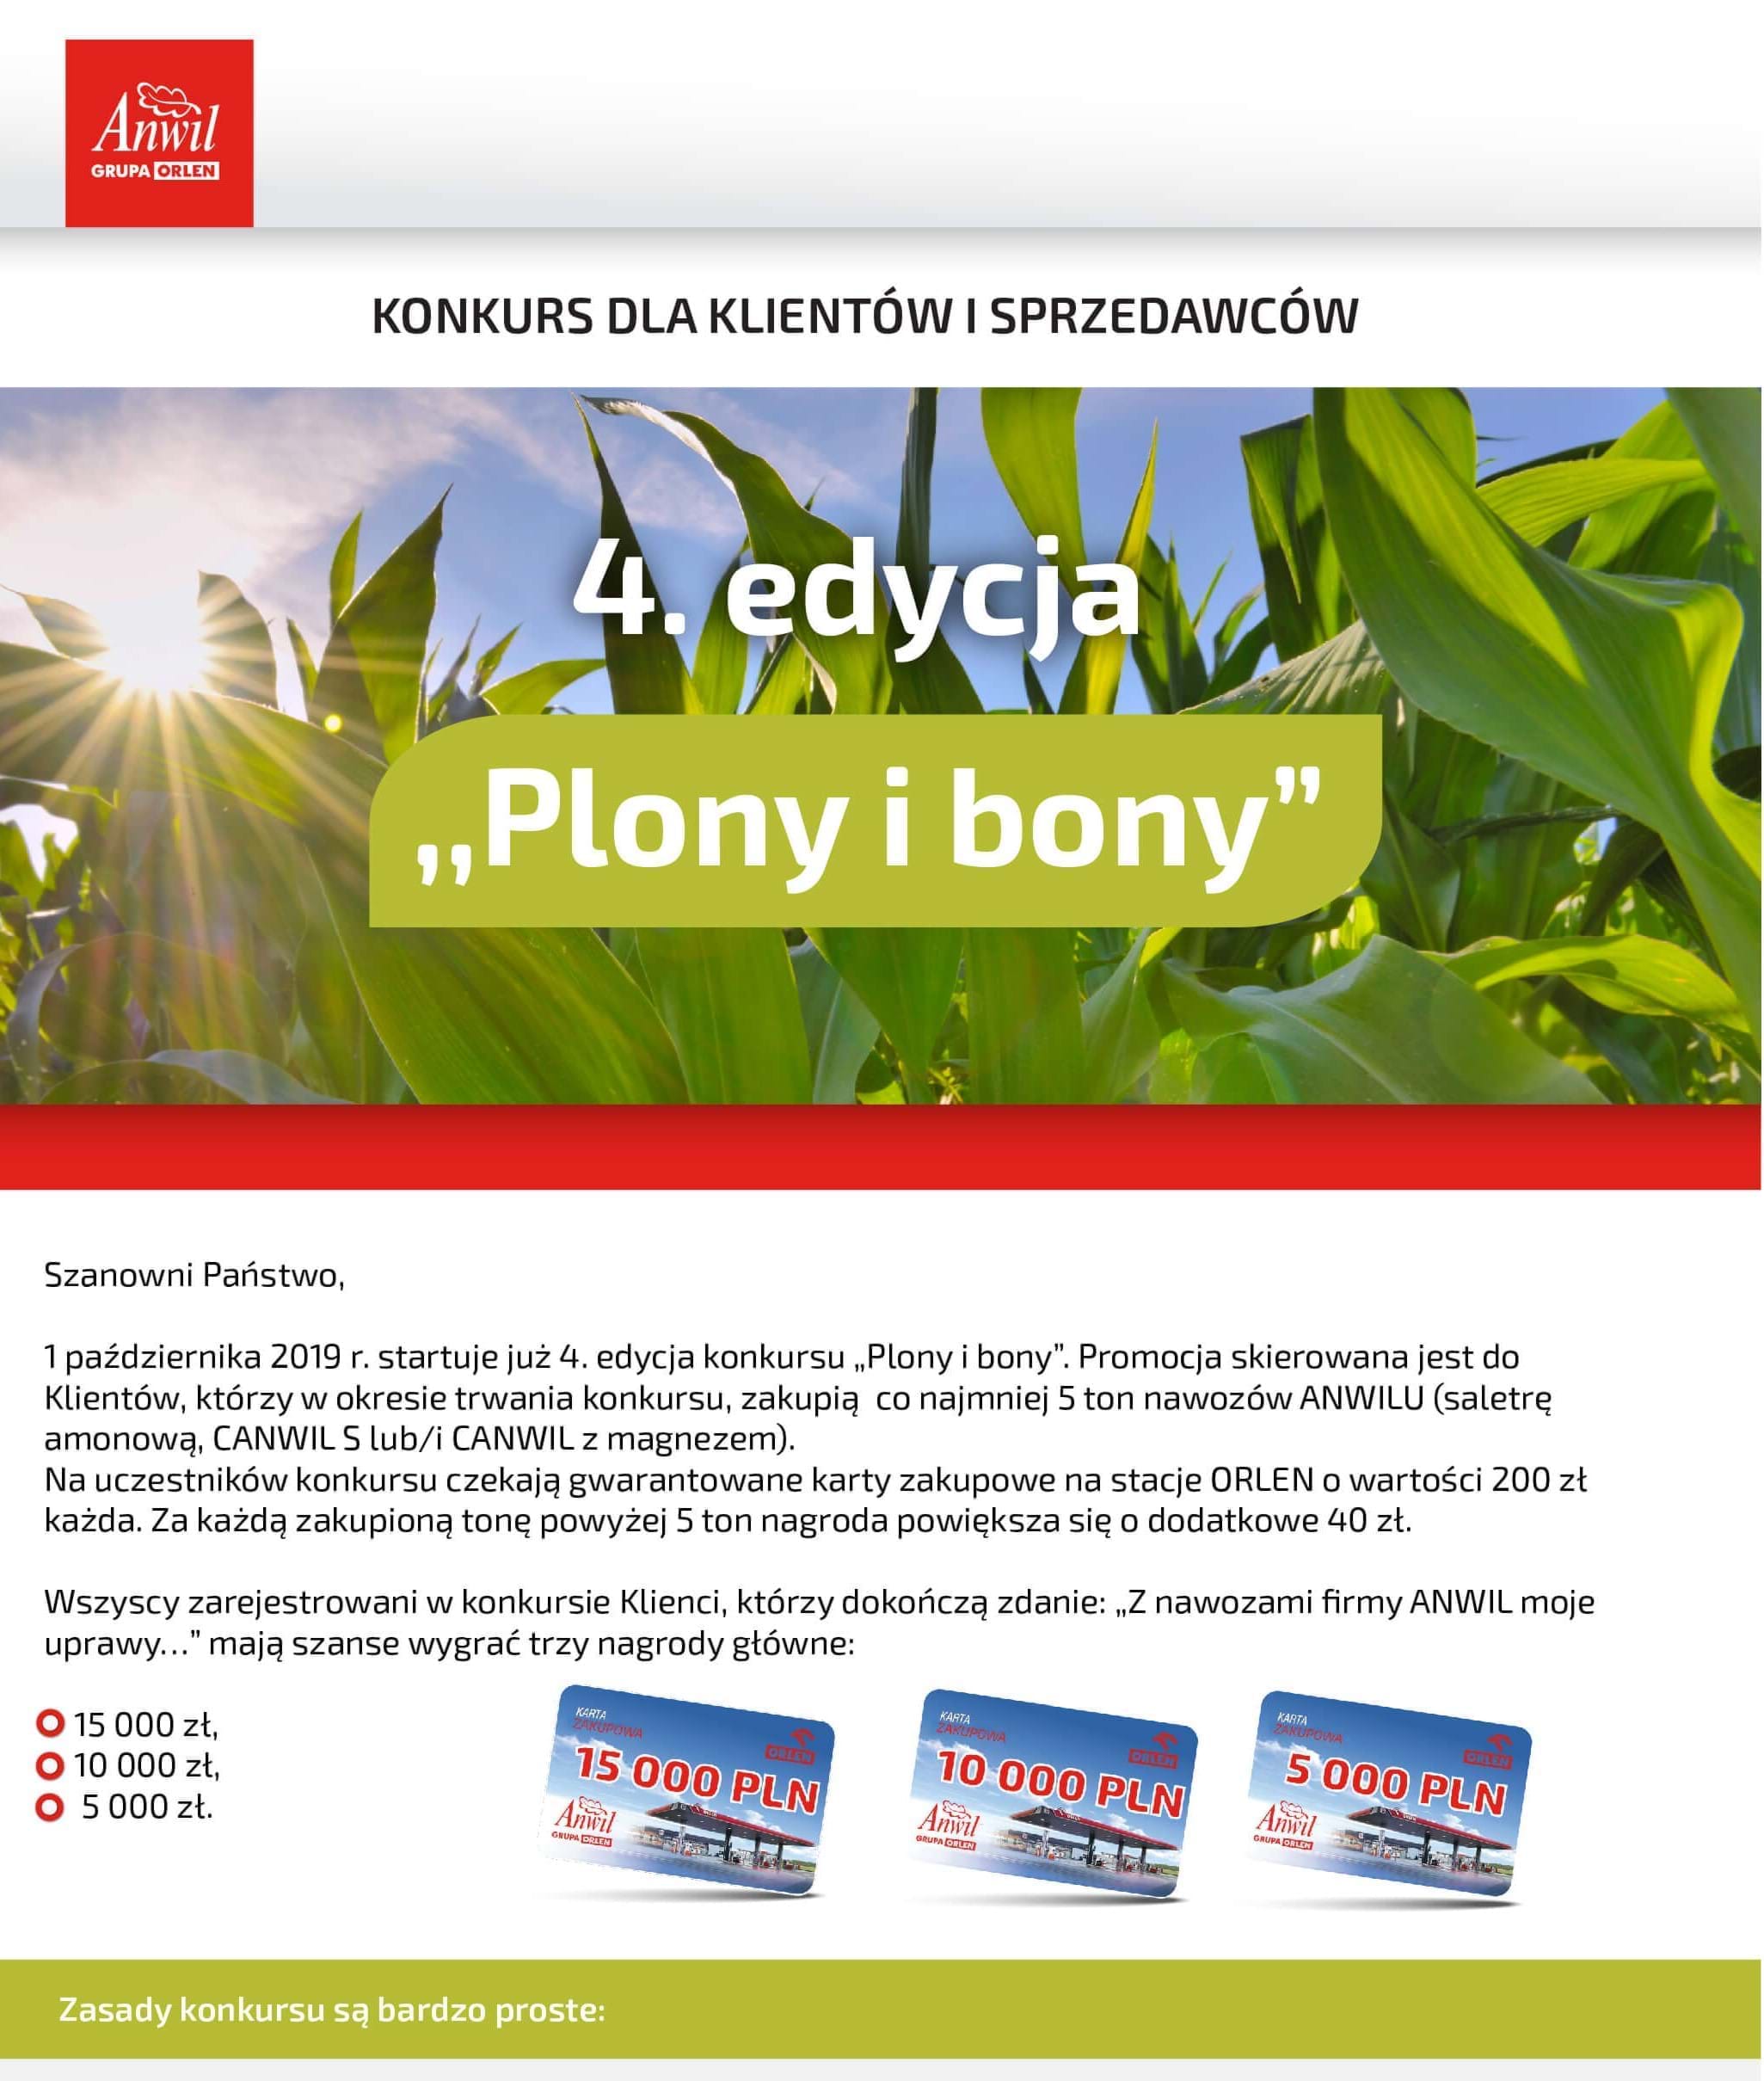 4. edycja konkursu „Plony i bony”